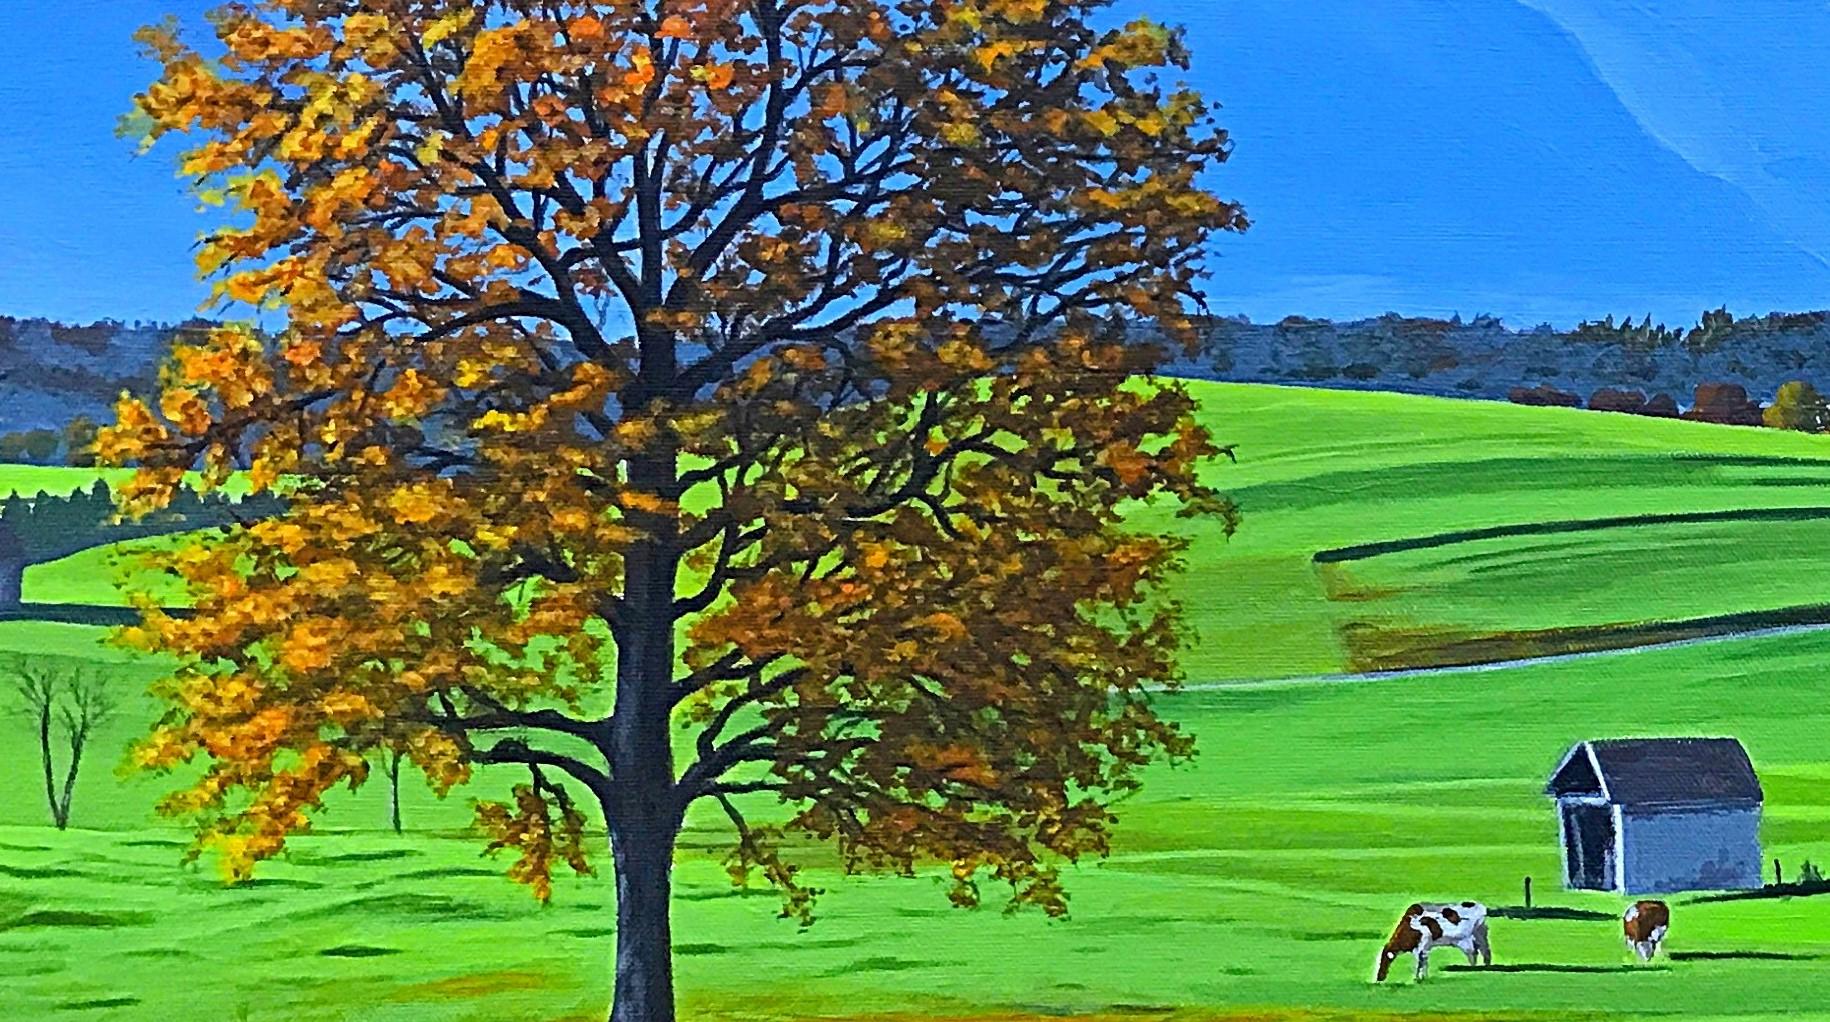 <p>Kommentare des Künstlers<br>Im Morgenlicht entfalten sich sanfte grüne Hügel vor nebelverhangenen Bergen. Herbstliche Bäume schmücken die Landschaft und werfen lange Schatten auf das leuchtende Feld. Die Anwesenheit von grasenden Kühen trägt zur